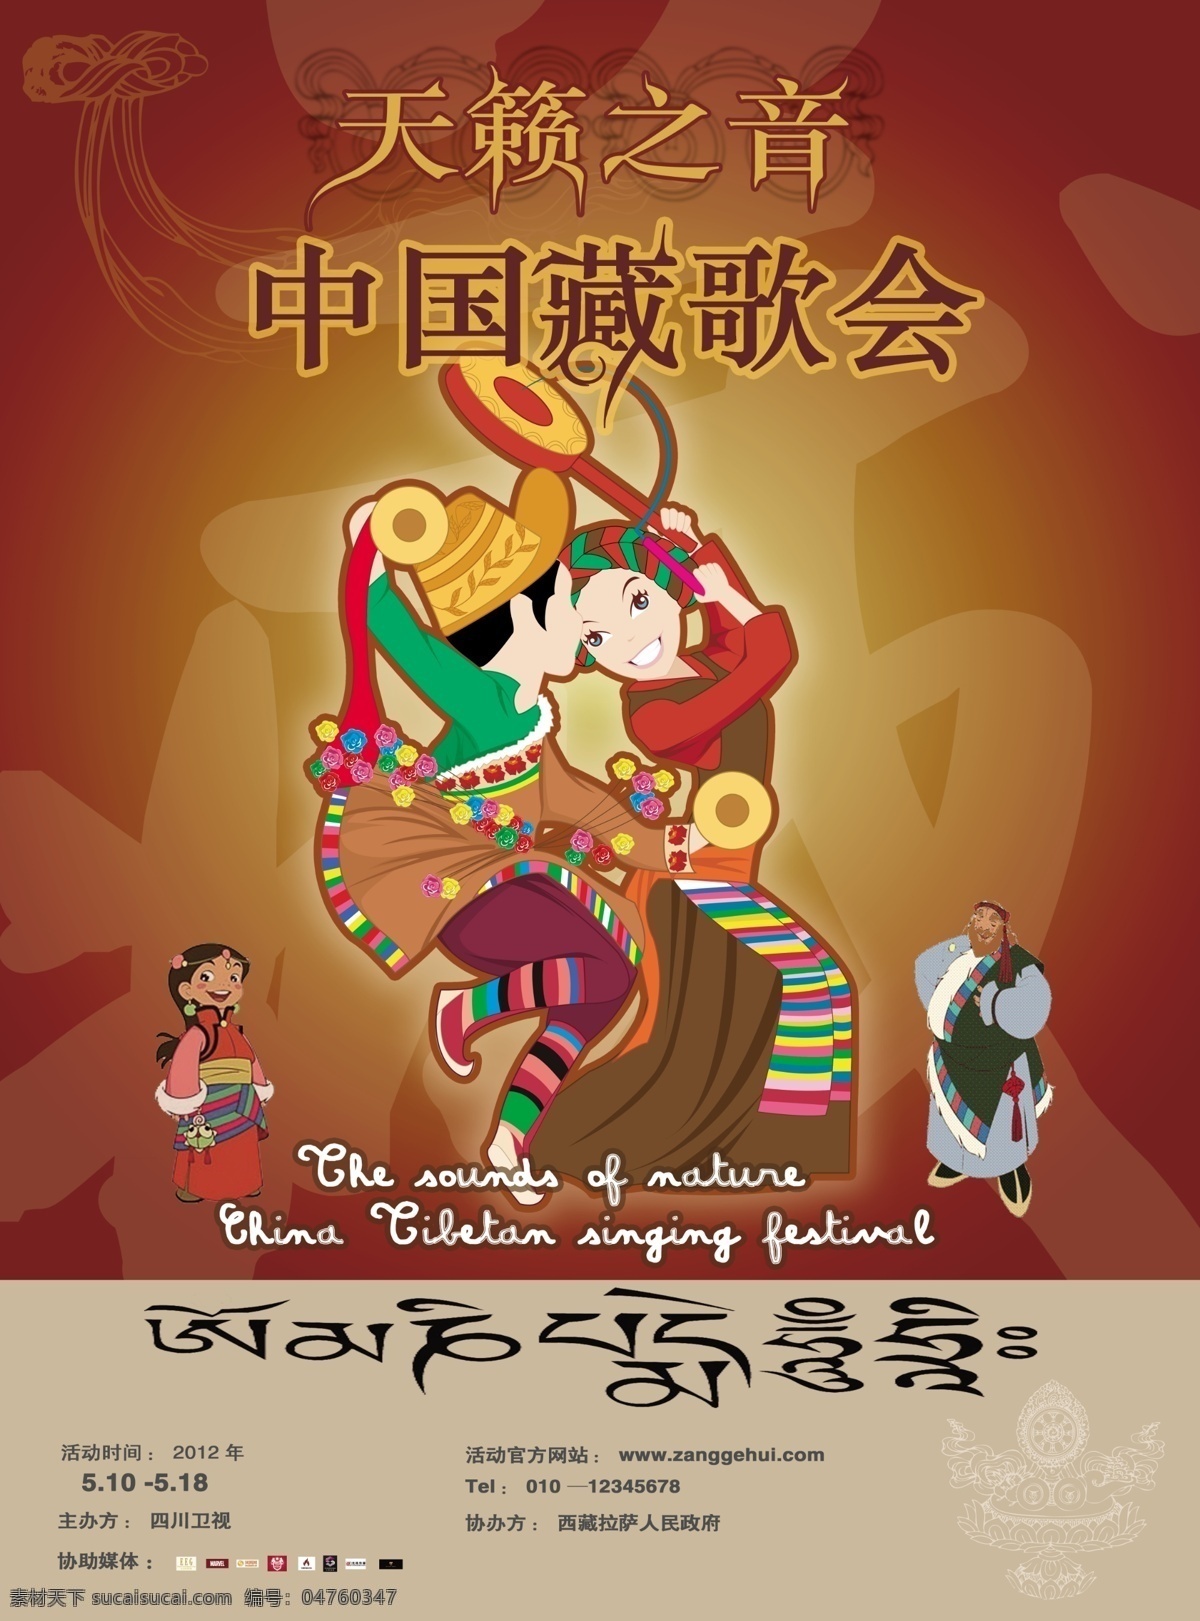 中国 藏 歌会 海报 藏歌会音乐 活动宣传海报 人民政府 西藏 歌舞 卡通少数民族 音乐 西藏元素 民族素材 卡通 藏文 文字字体设计 人物 图腾 藏族图案 广告设计模板 源文件 分层 红色